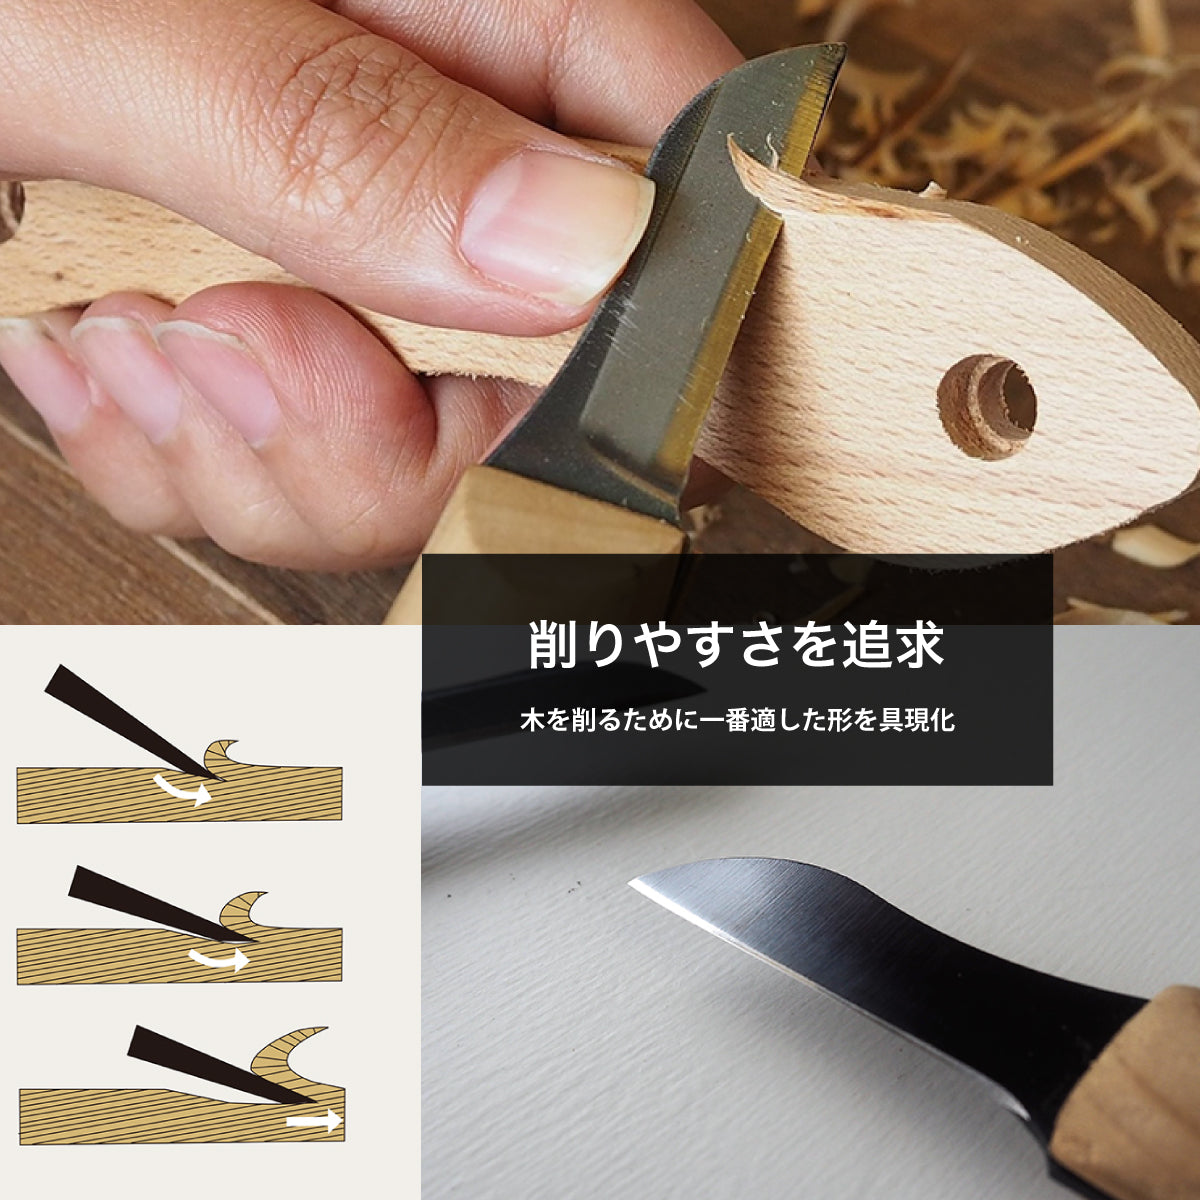 【難易度★★★】It's my knife Craft Advanced (炭素鋼/青紙二号) 4,290円